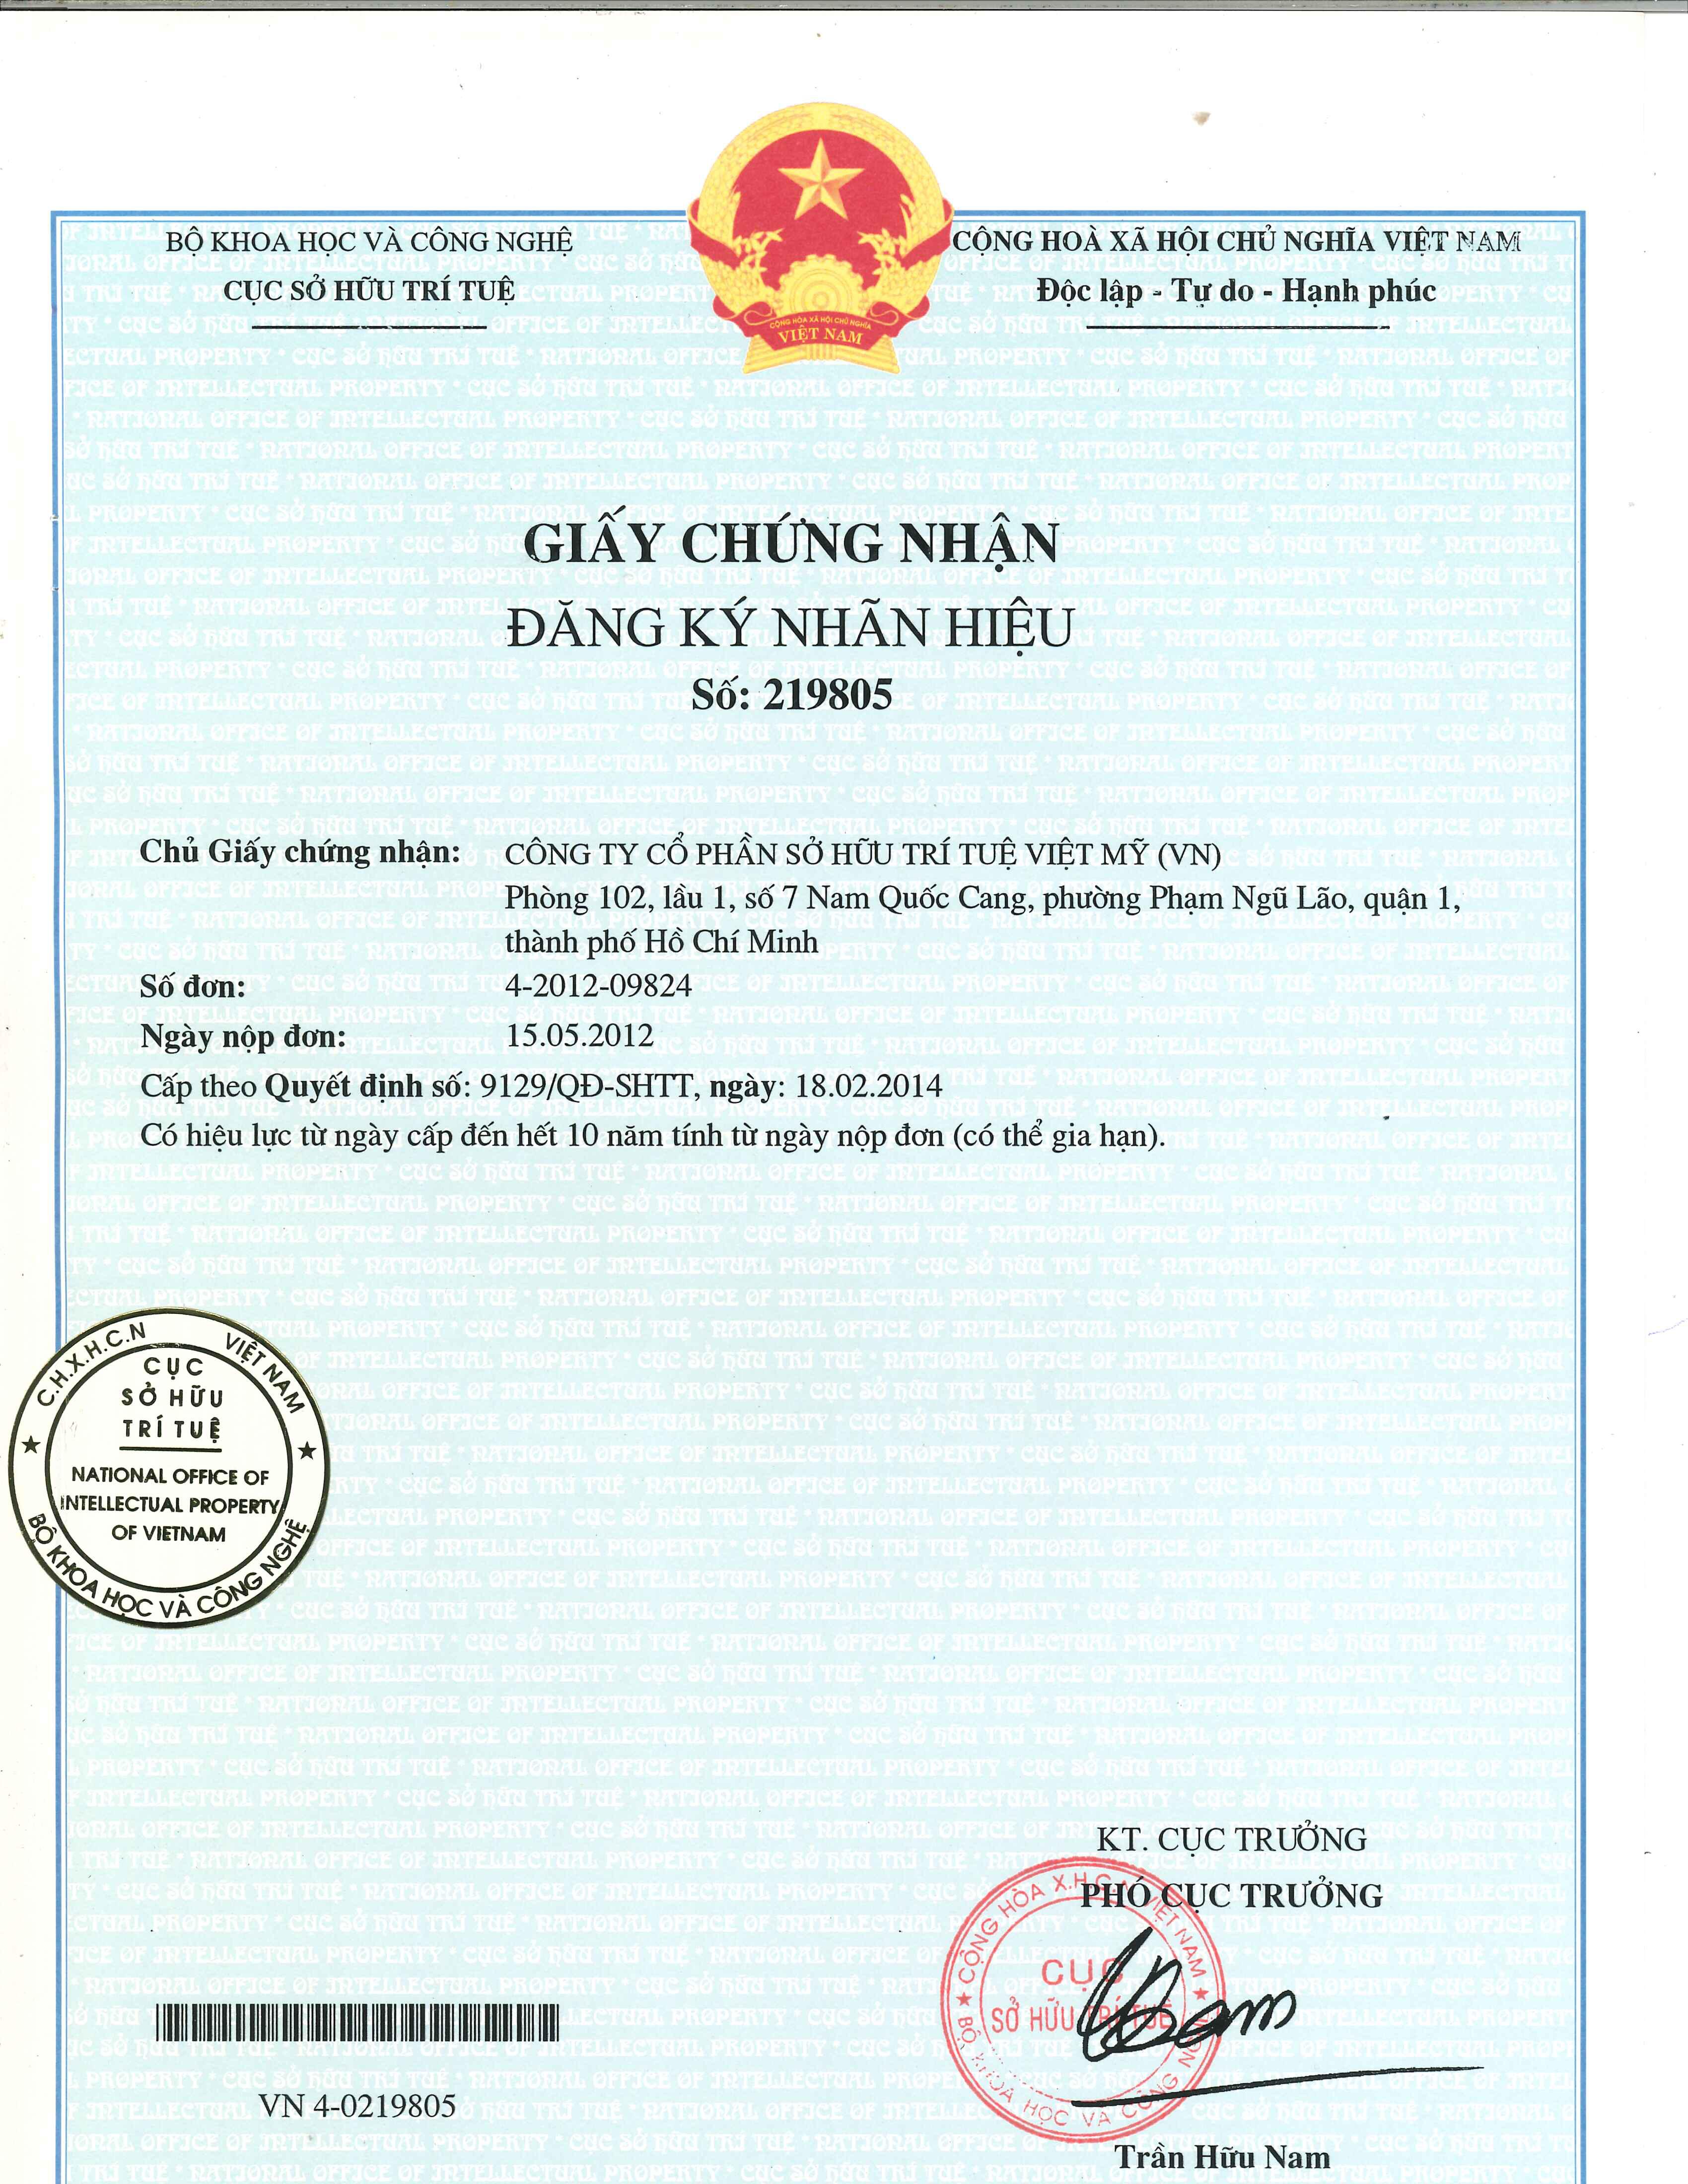 Giấy chứng nhận đăng ký nhãn hiệu số 219805 cấp ngày 18/02/2014